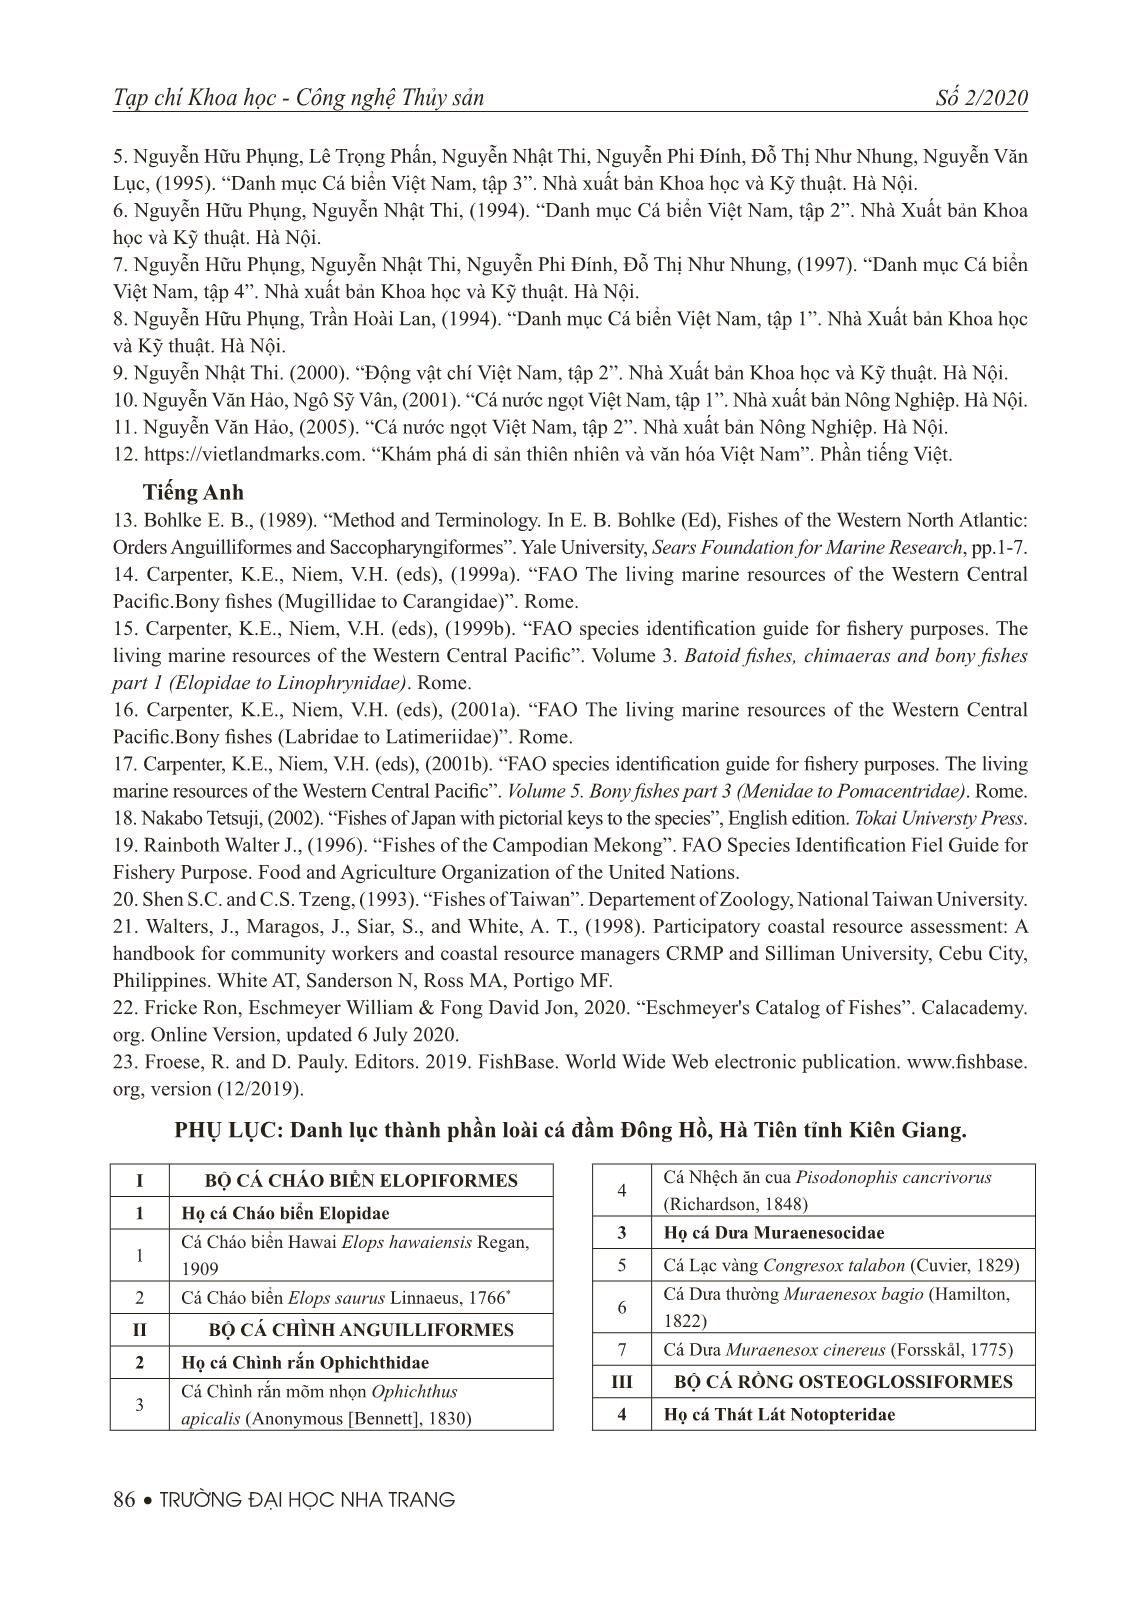 Thành phần loài và các loại nghề khai thác cá ở đầm Đông Hồ, Hà Tiên tỉnh Kiên Giang trang 8